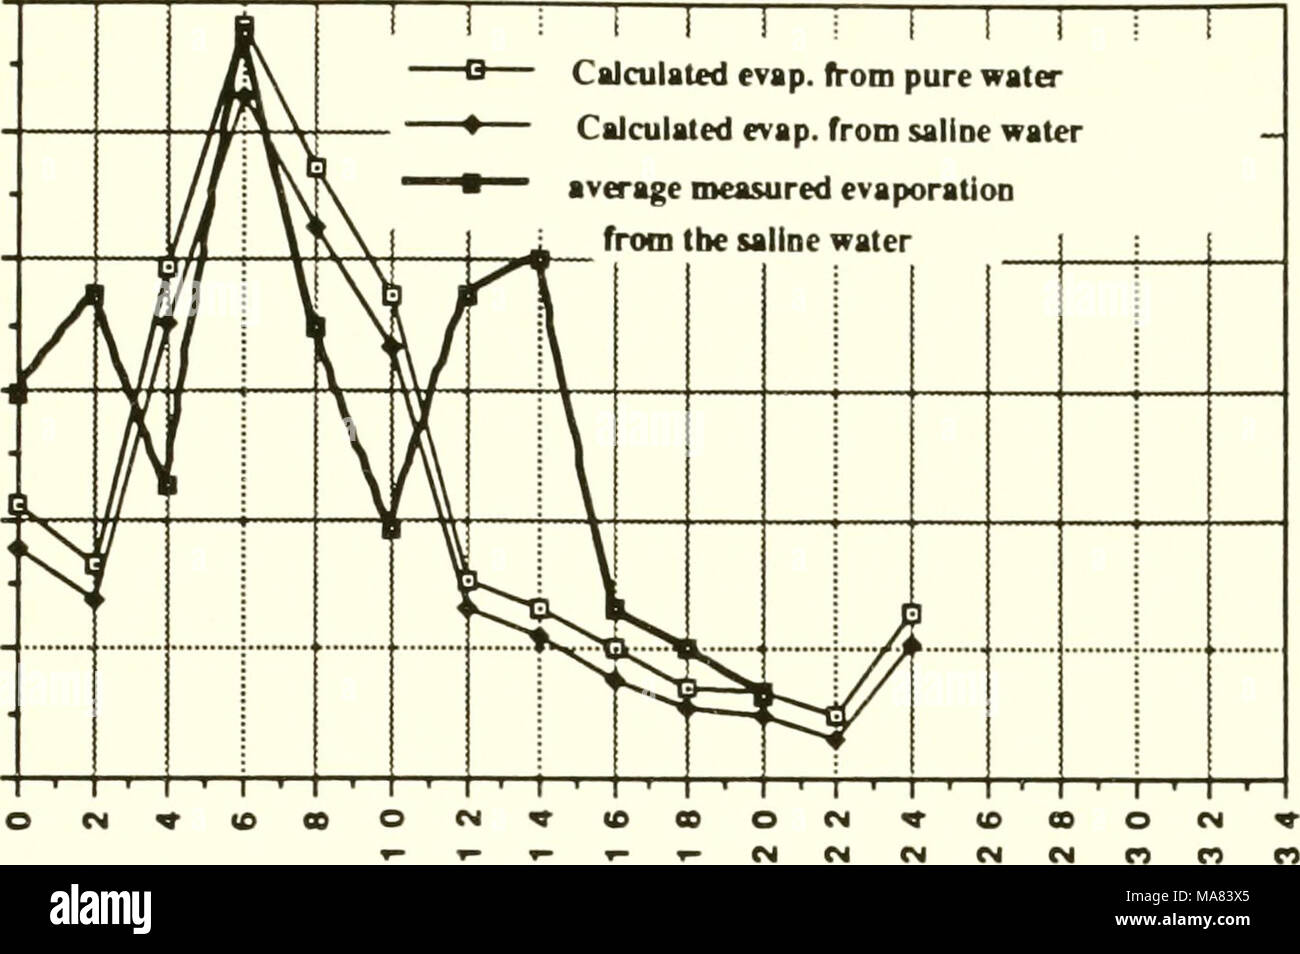 . Bewertung von Methoden gefahren zu landwirtschaftlichen Verdunstung Teiche im San Joaquin Valley, California wildlife zu minimieren: Abschlussbericht. Vergangene Stunden Abbildung 4.3 berechnete Verdunstungsrate von reinem Wasser als auch von Salzwasser (EG = 14 dS/m) comp&gt; auf die gemessene Rate ared von der Saline floating pwn bei Peck Teich für den Zeitraum August 19-20, 1989 (andere Vergleichs-Daten) 0,6 ABL 0,4 - r - ABL 0,2 J* 0,1 0,0 Stockfoto